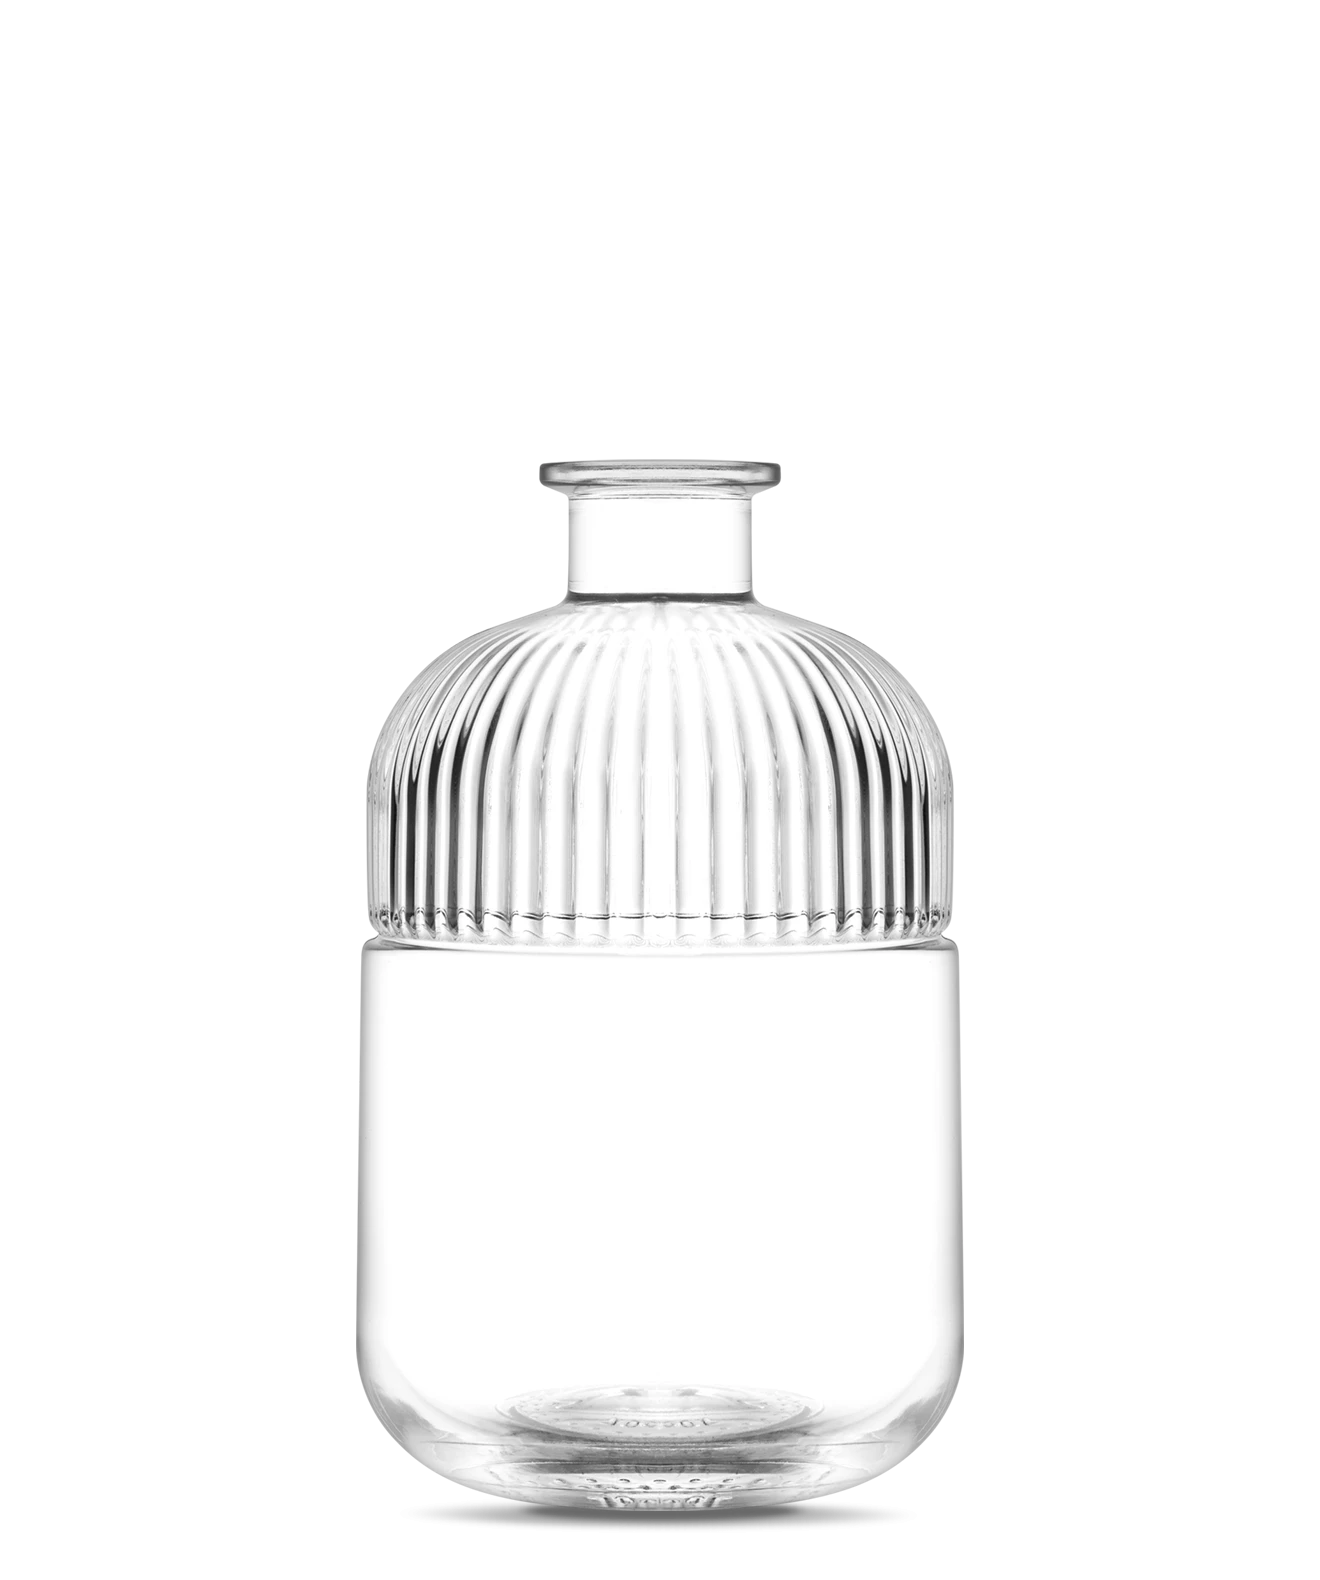 macao-bottle-for-room-fragrances-vetroelite-view1